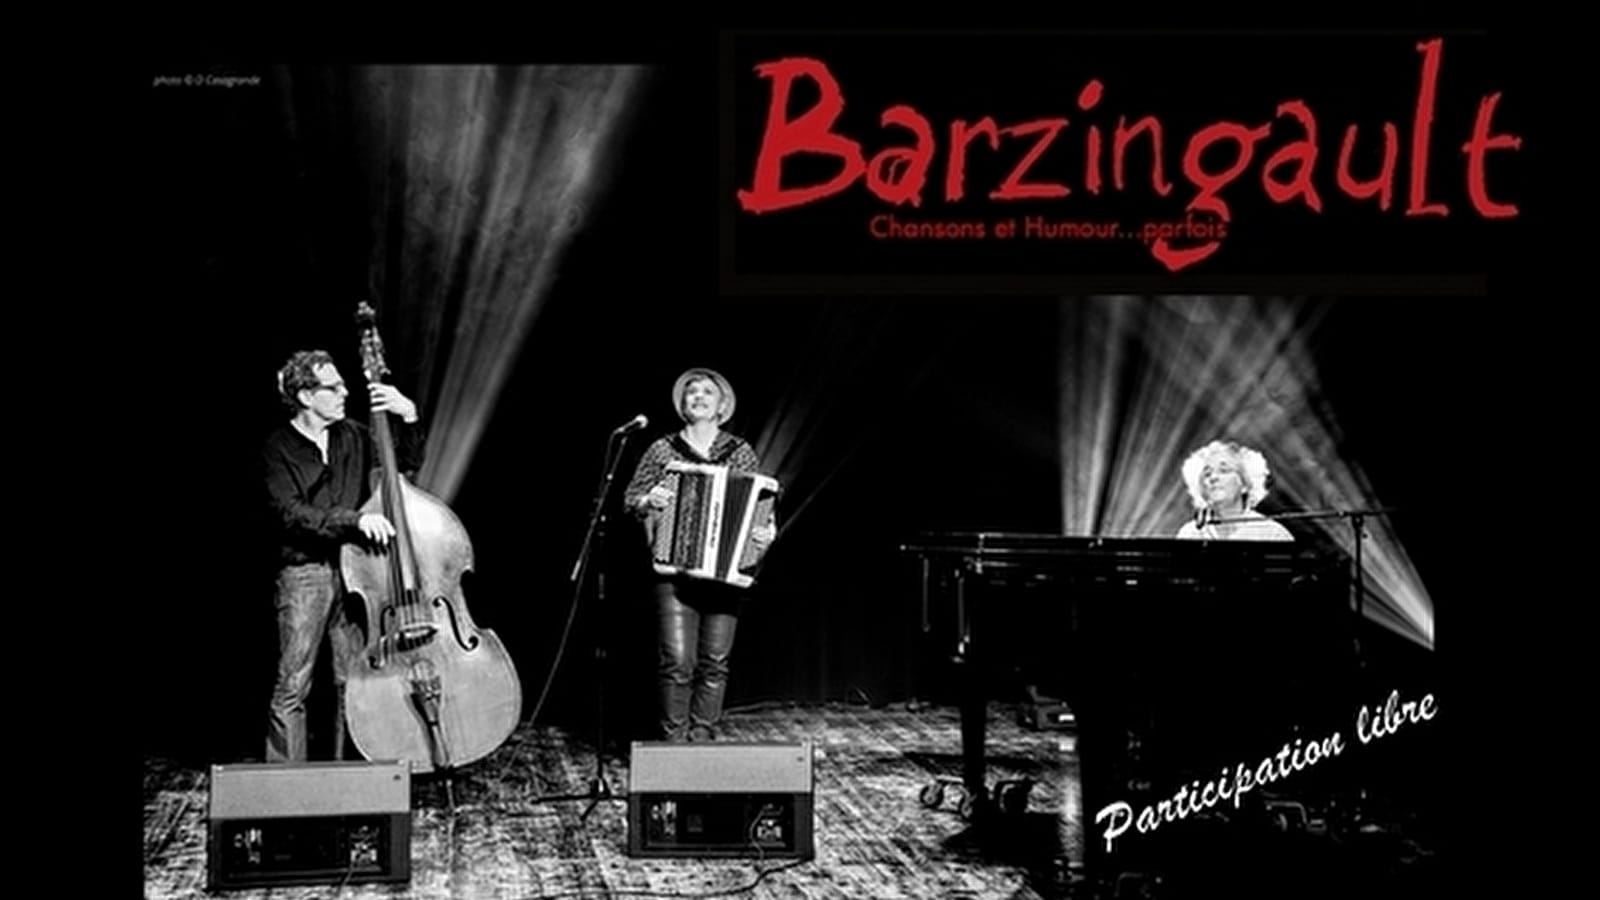 Barzingault en concert